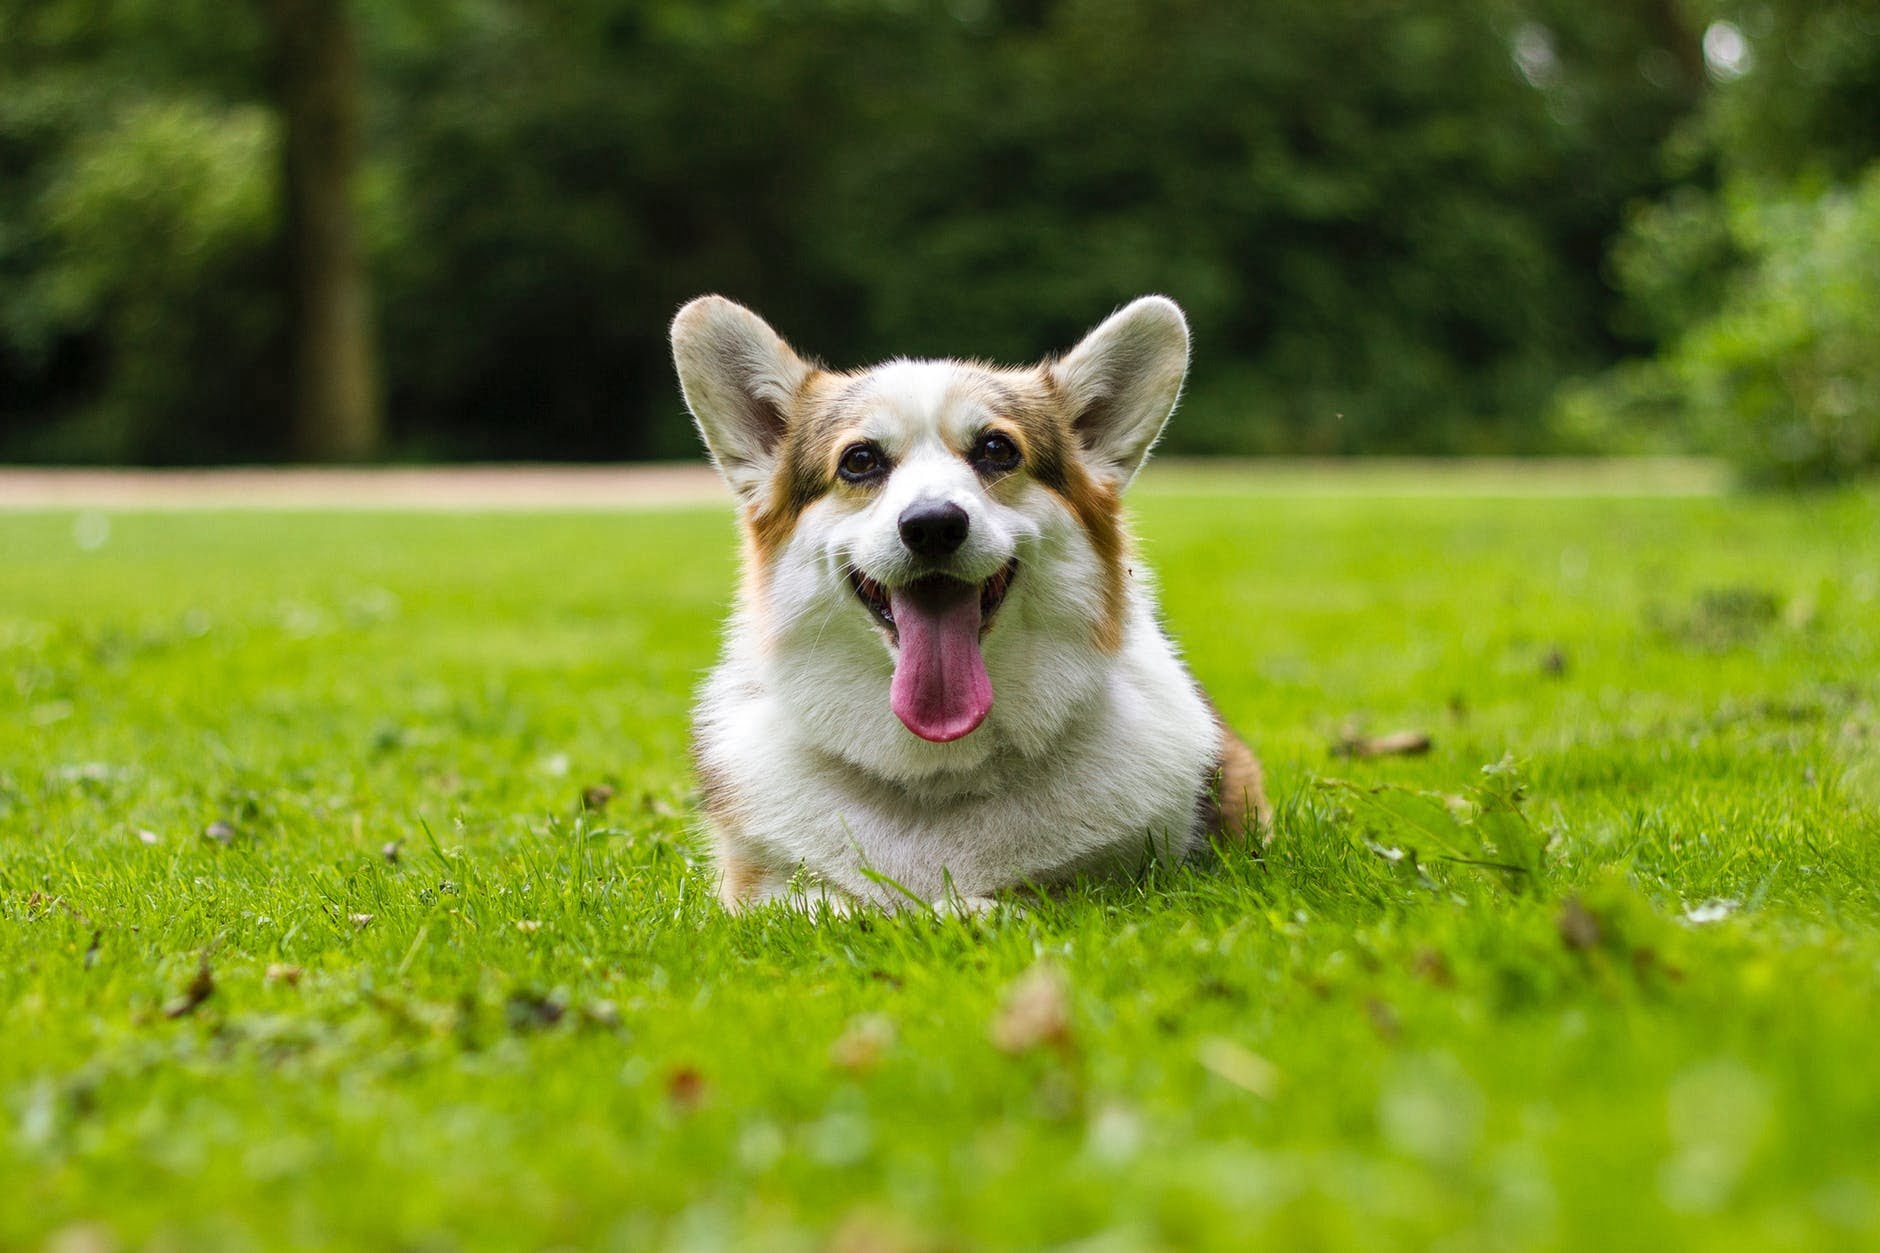 Рекомендации ветеринаров по воспитанию щенка как идеальной собаки. Узнайте все об этом